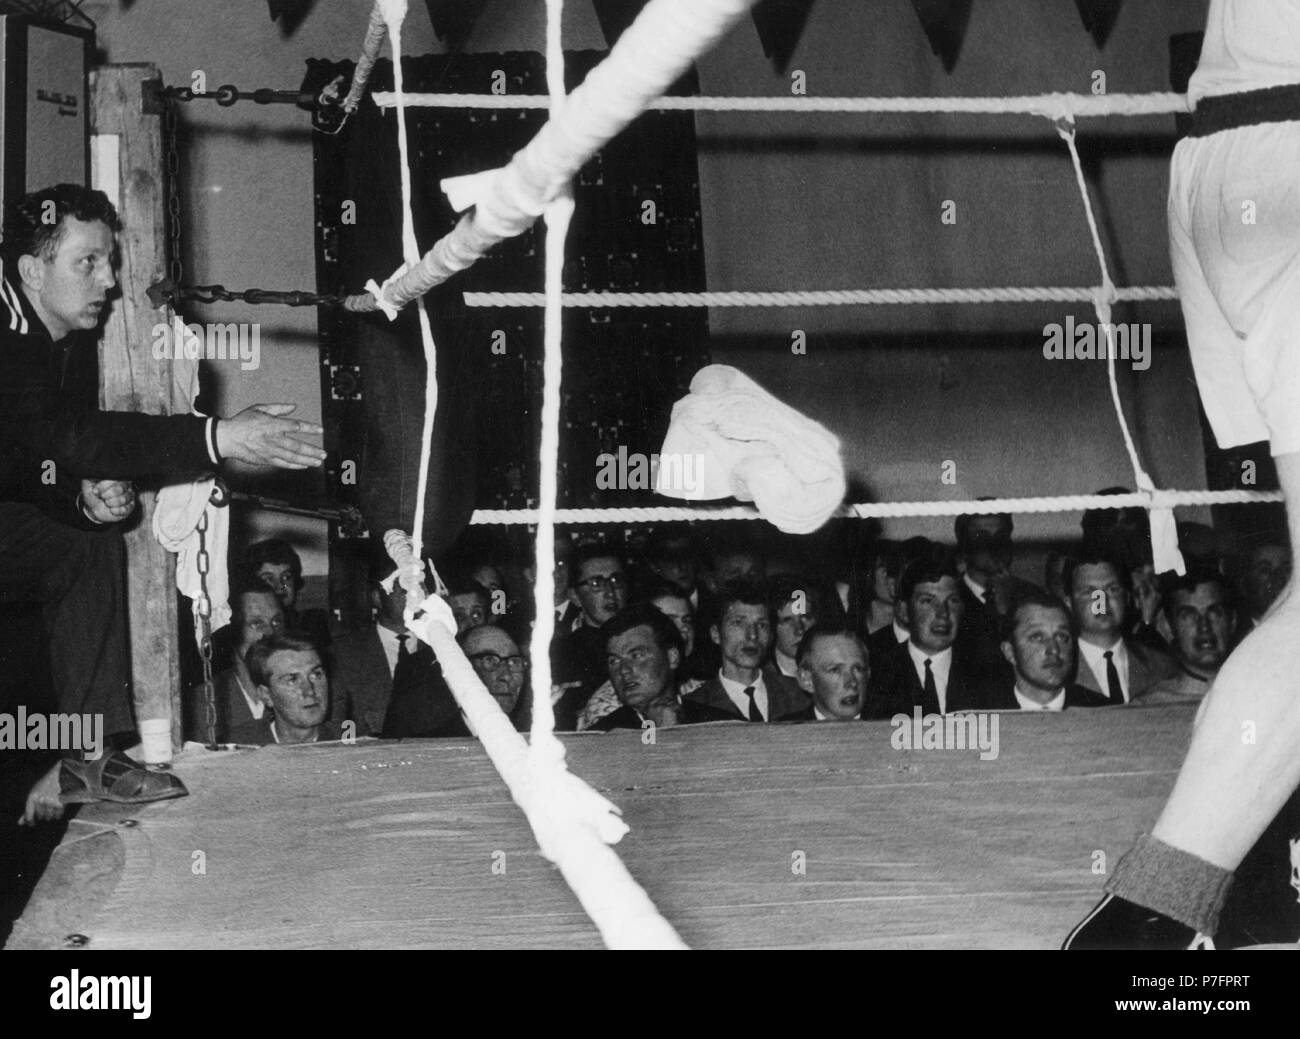 Werfen das Handtuch beim Boxen, 1950er Jahre, genaue Lage unbekannt,  Deutschland Stockfotografie - Alamy